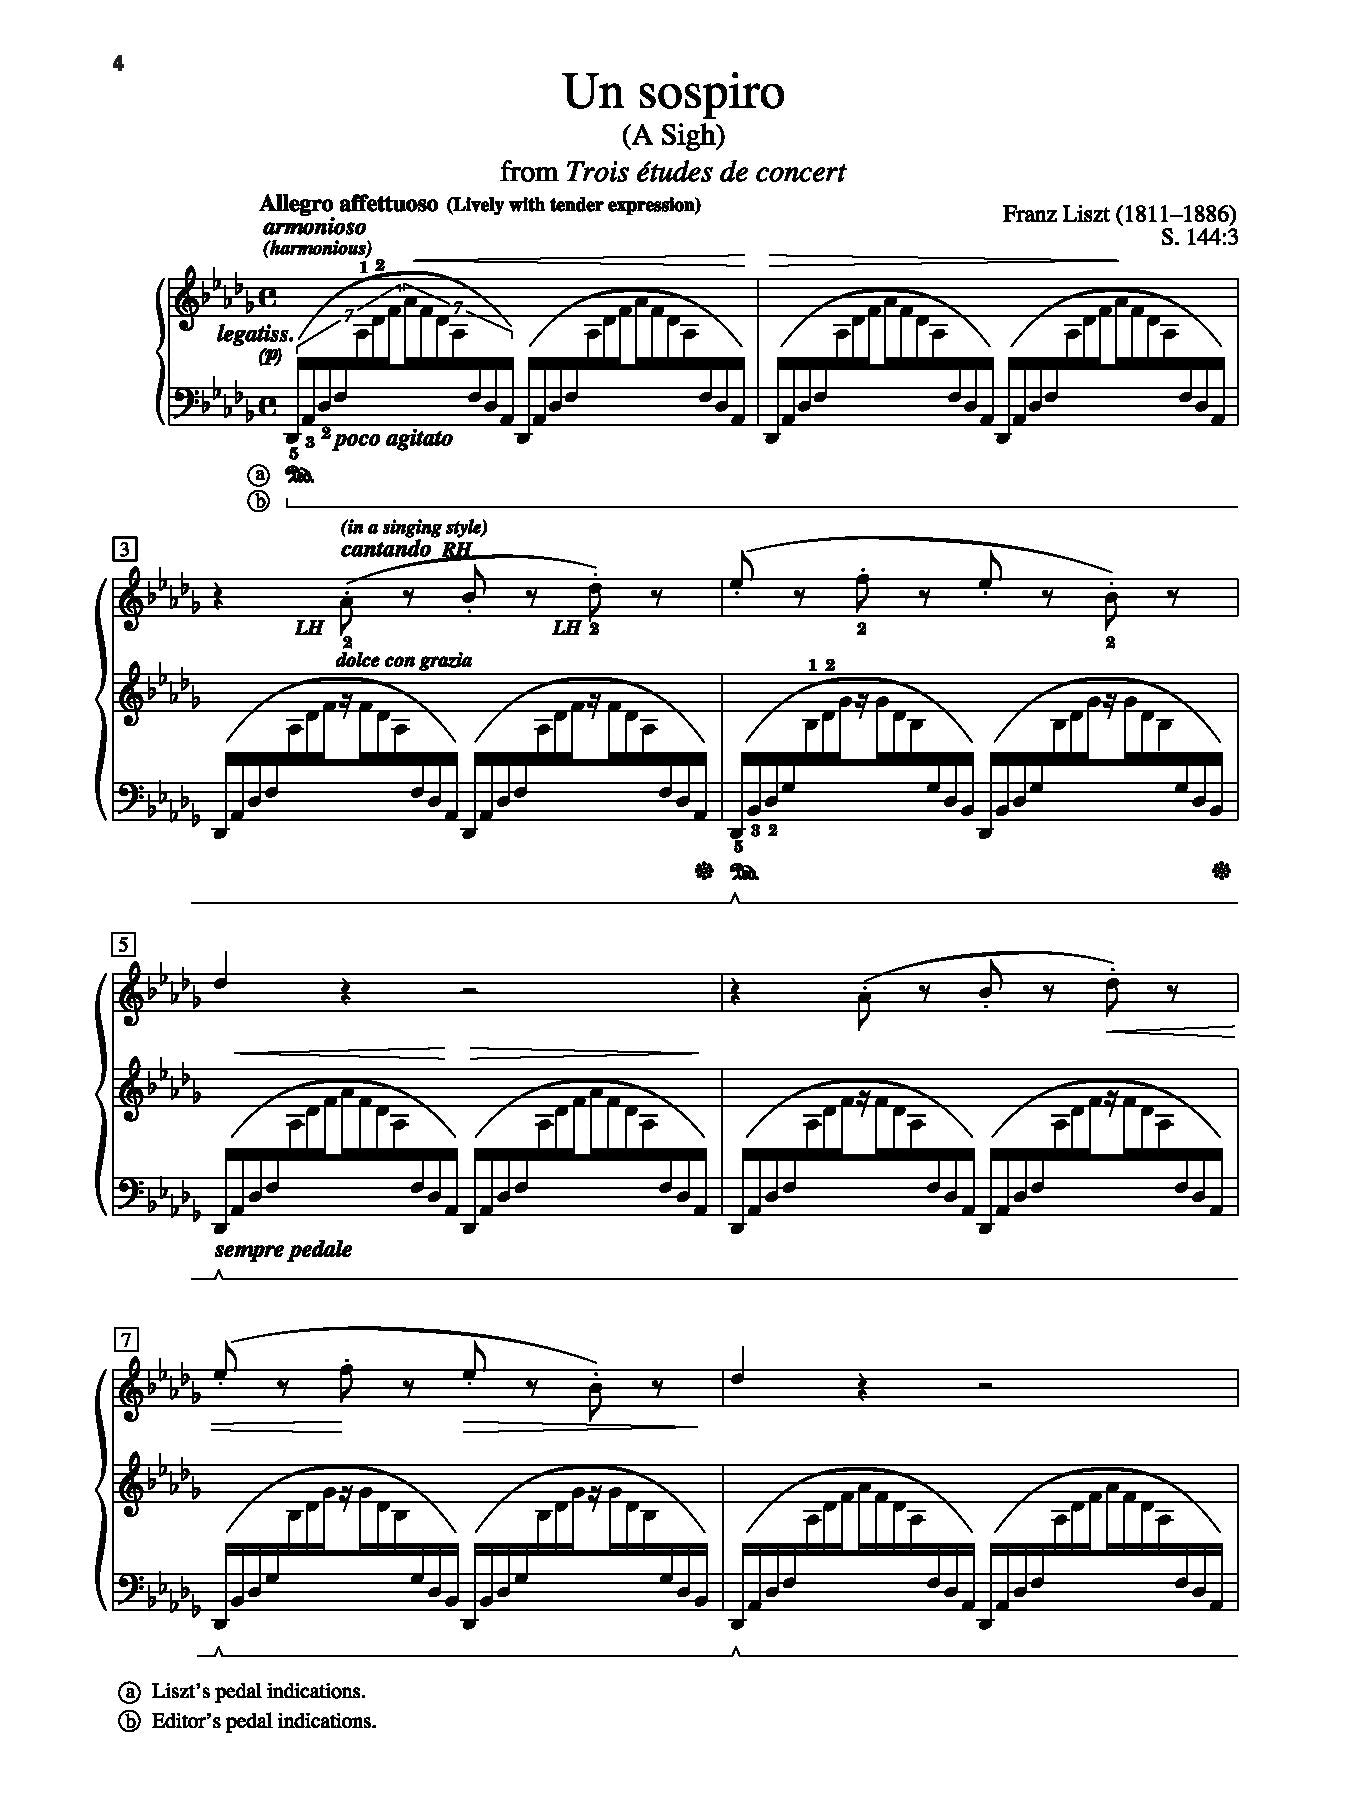 Liszt: Un sospiro, S. 144:3 (from Trois études de concert)